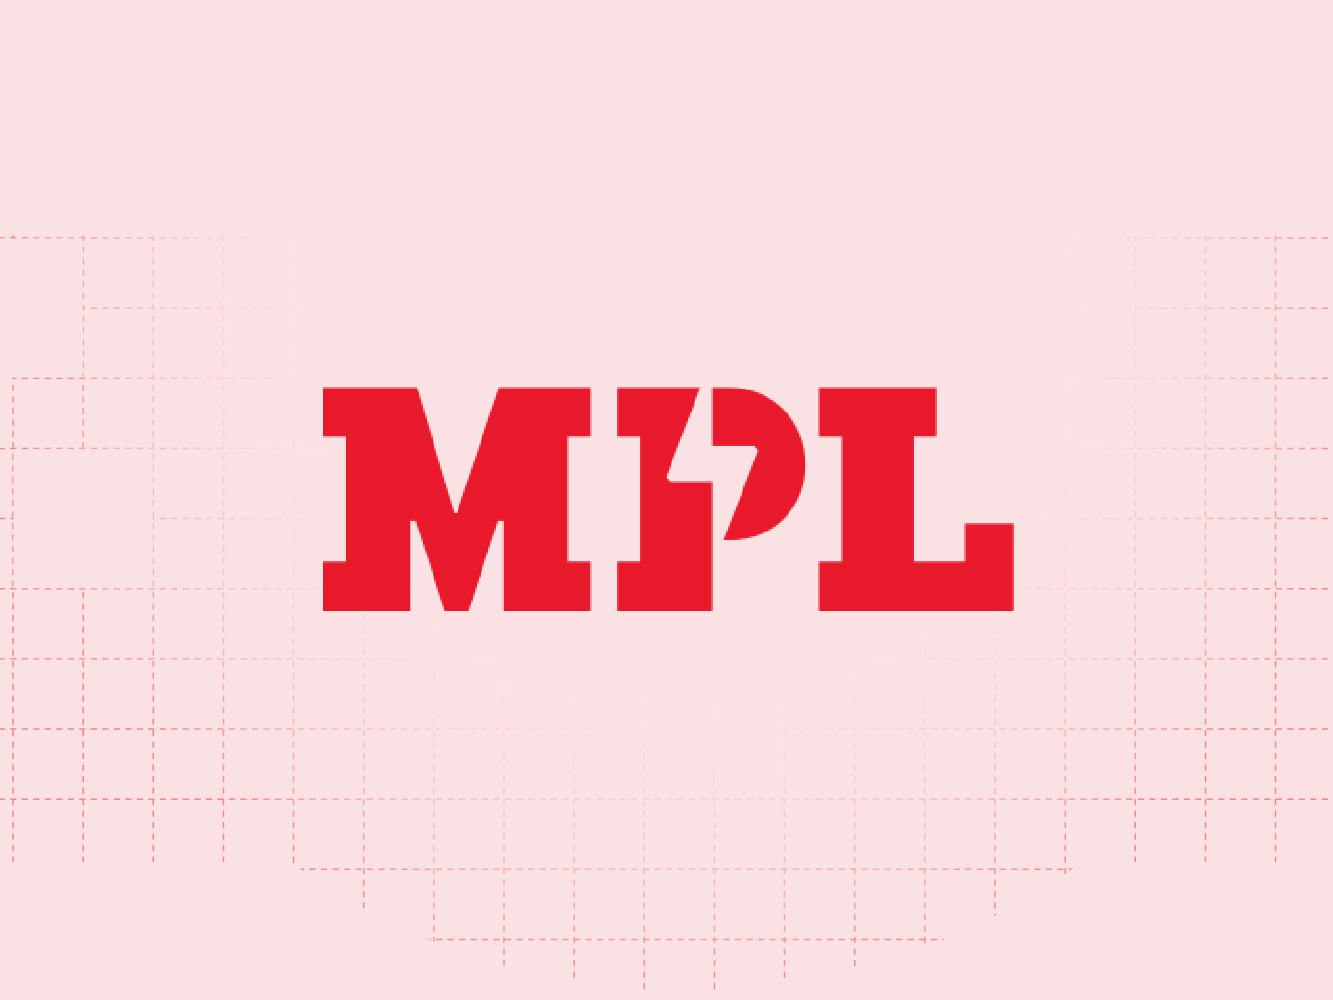 MPL